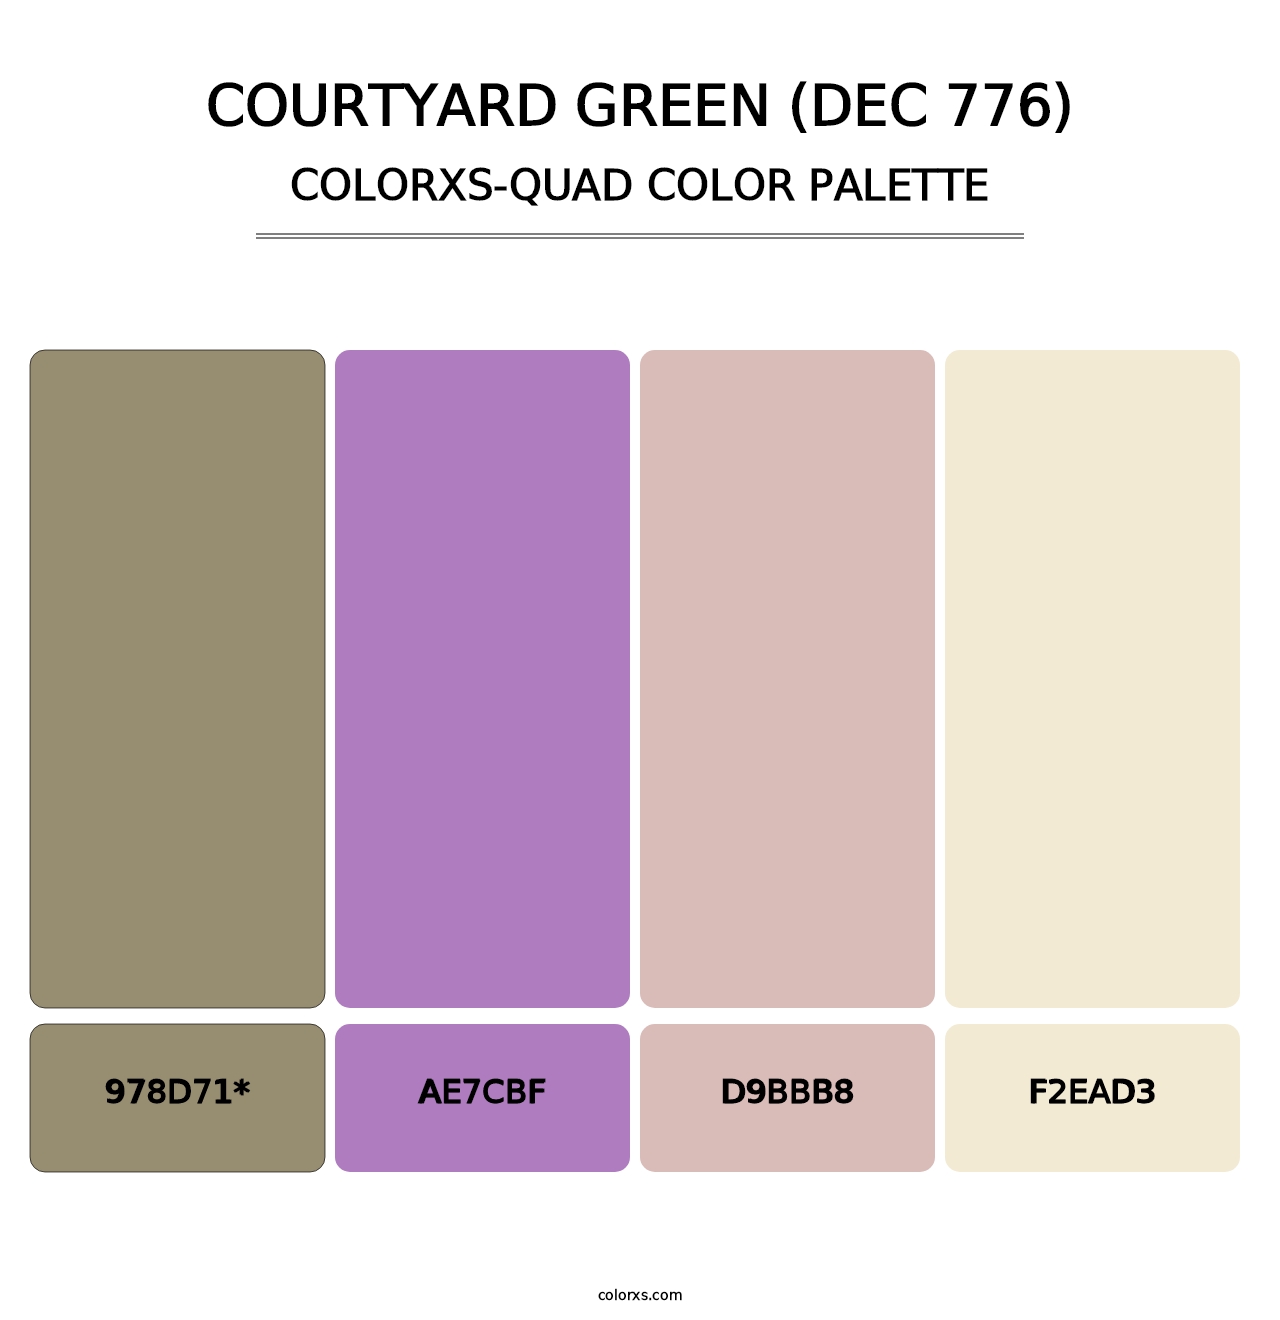 Courtyard Green (DEC 776) - Colorxs Quad Palette